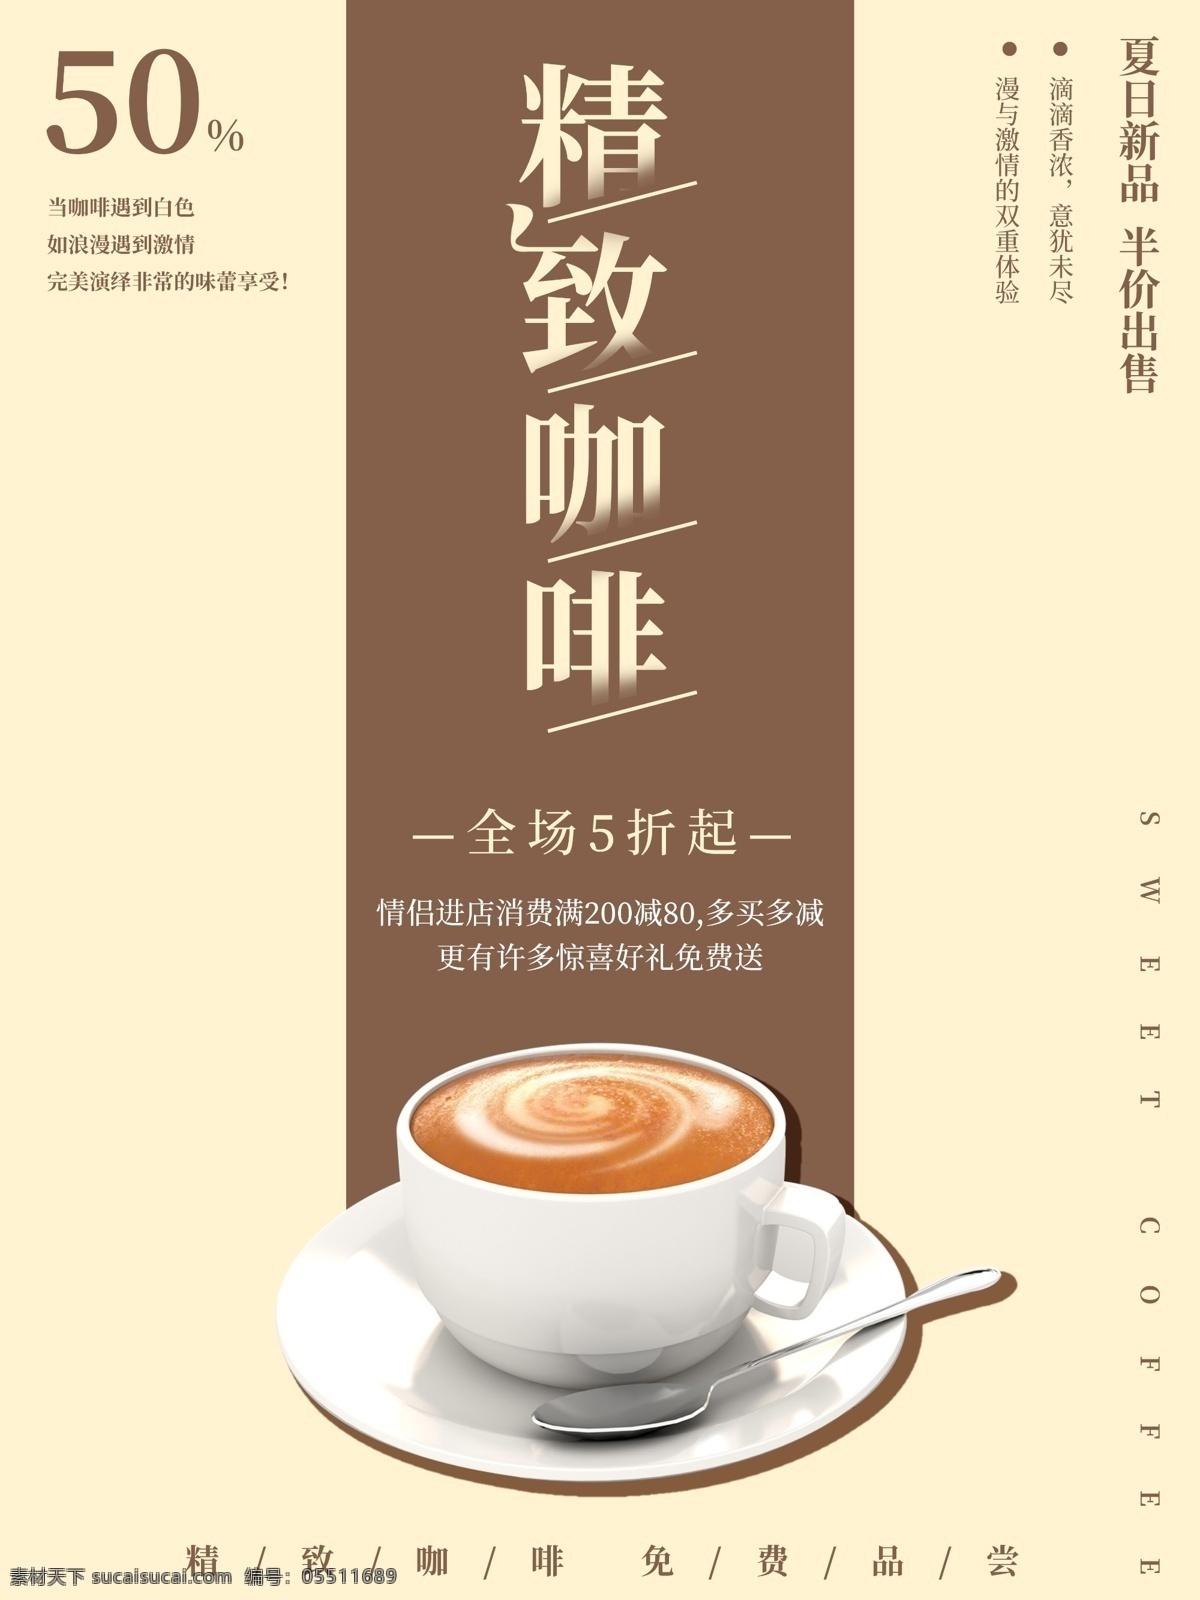 咖啡 美食 小吃 甜品 促销 宣传海报 宣传 促销海报 海报 咖啡海报